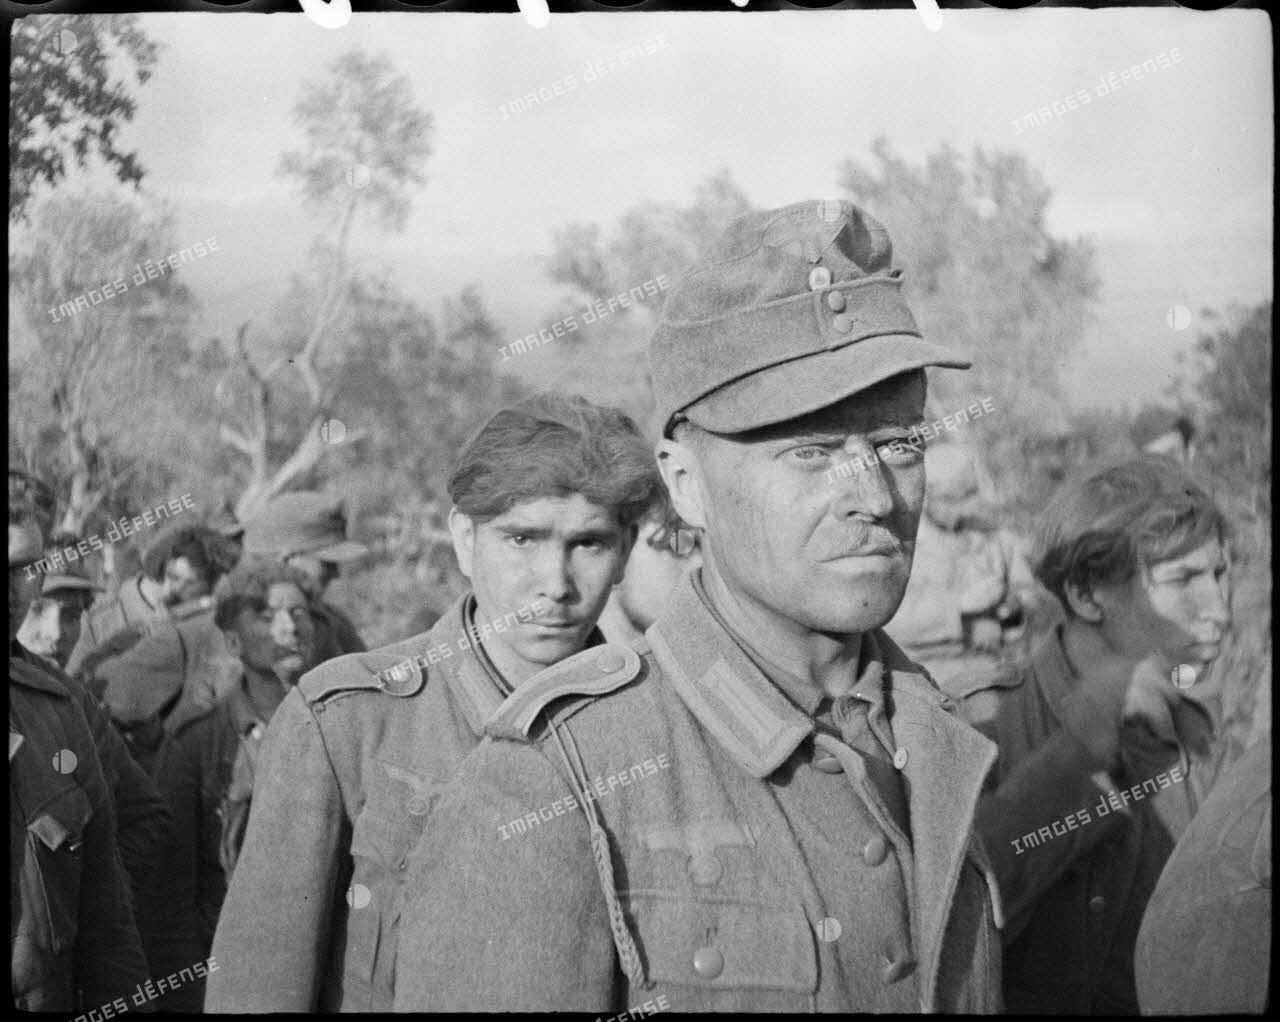 Des fantassins allemands, appartenant probablement à la 71. Infanterie-Division (division d'infanterie) et faits prisonniers lors de la prise de Castelforte par la 3e division d'infanterie algérienne (DIA), sont rassemblés avant d'être fouillés.